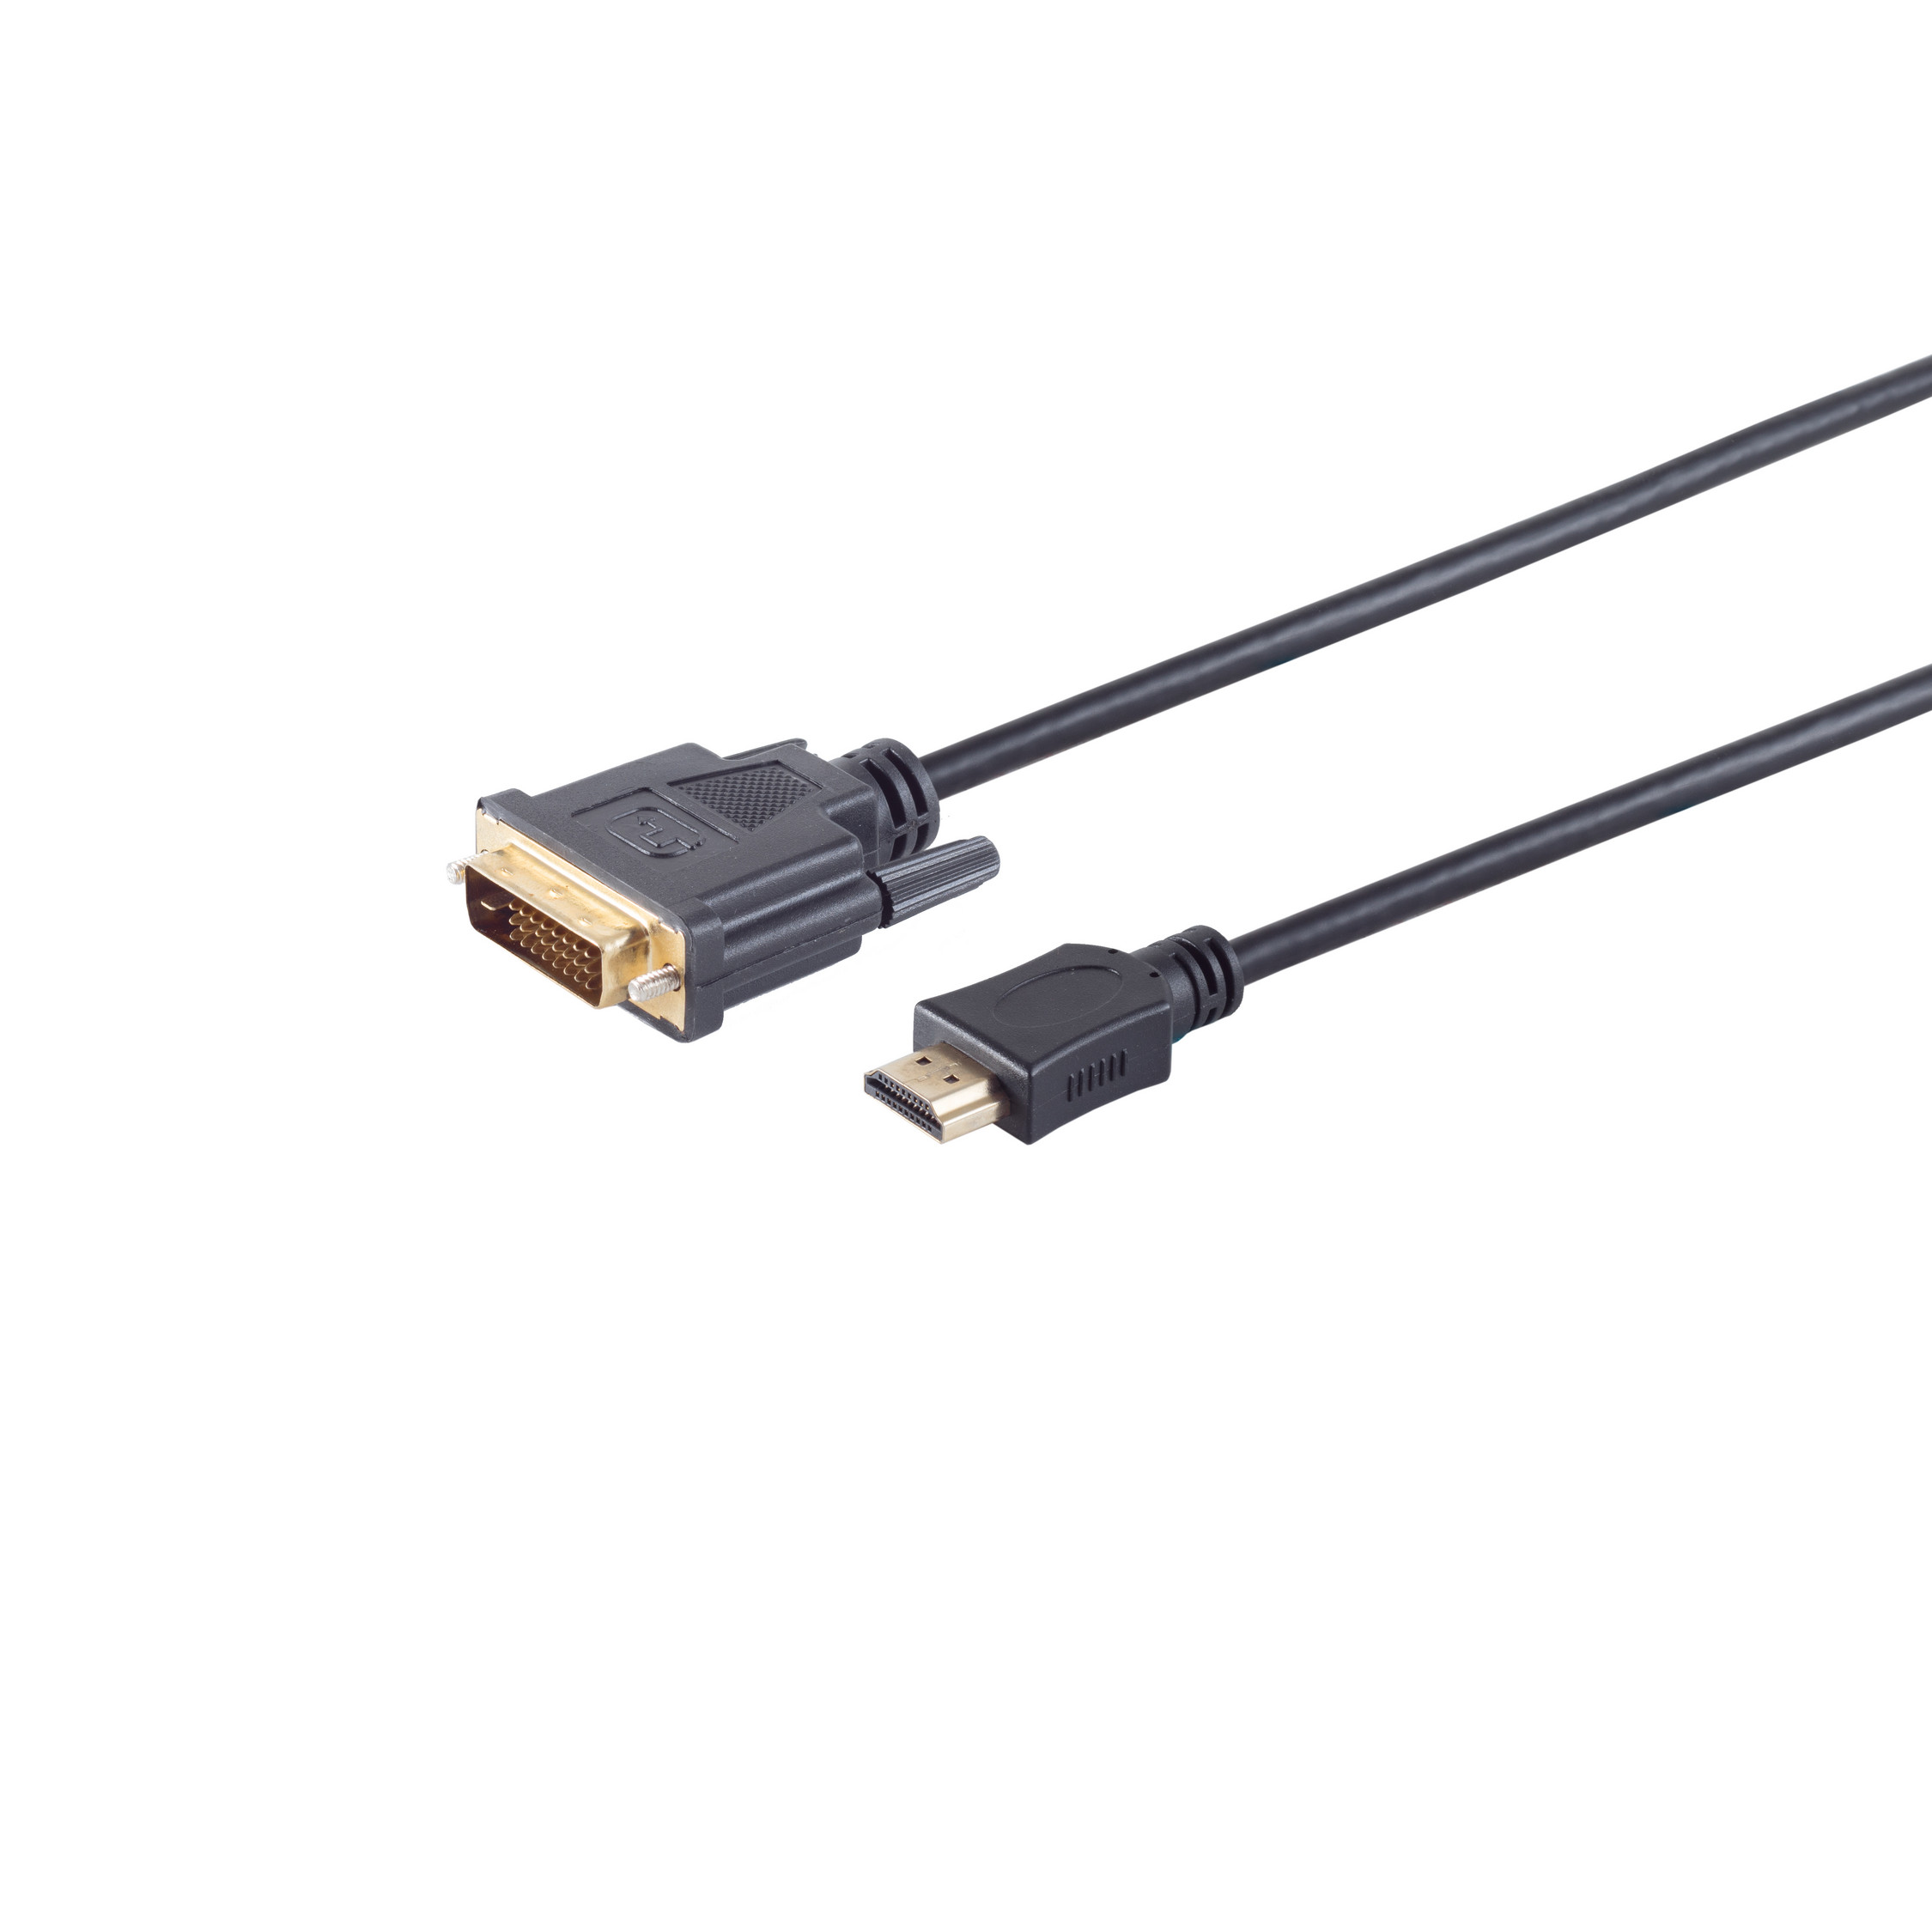 S/CONN MAXIMUM HDMI HDMI CONNECTIVITY verg. DVI-D Stecker Kabel 10m Stecker (24+1) 